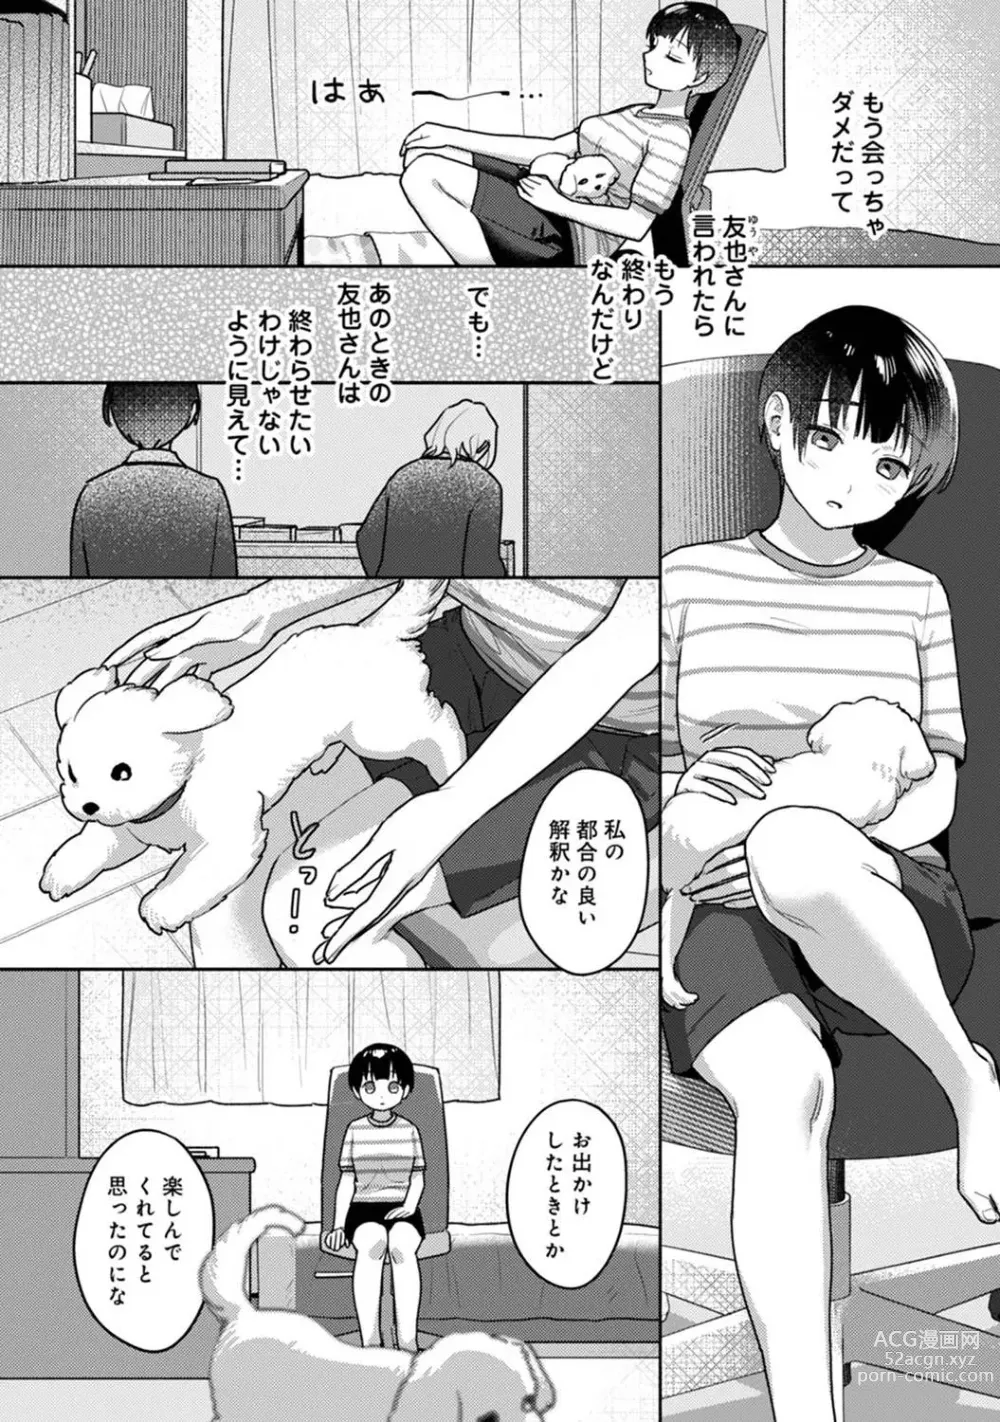 Page 12 of manga Comic Ananga-Ranga Vol 104